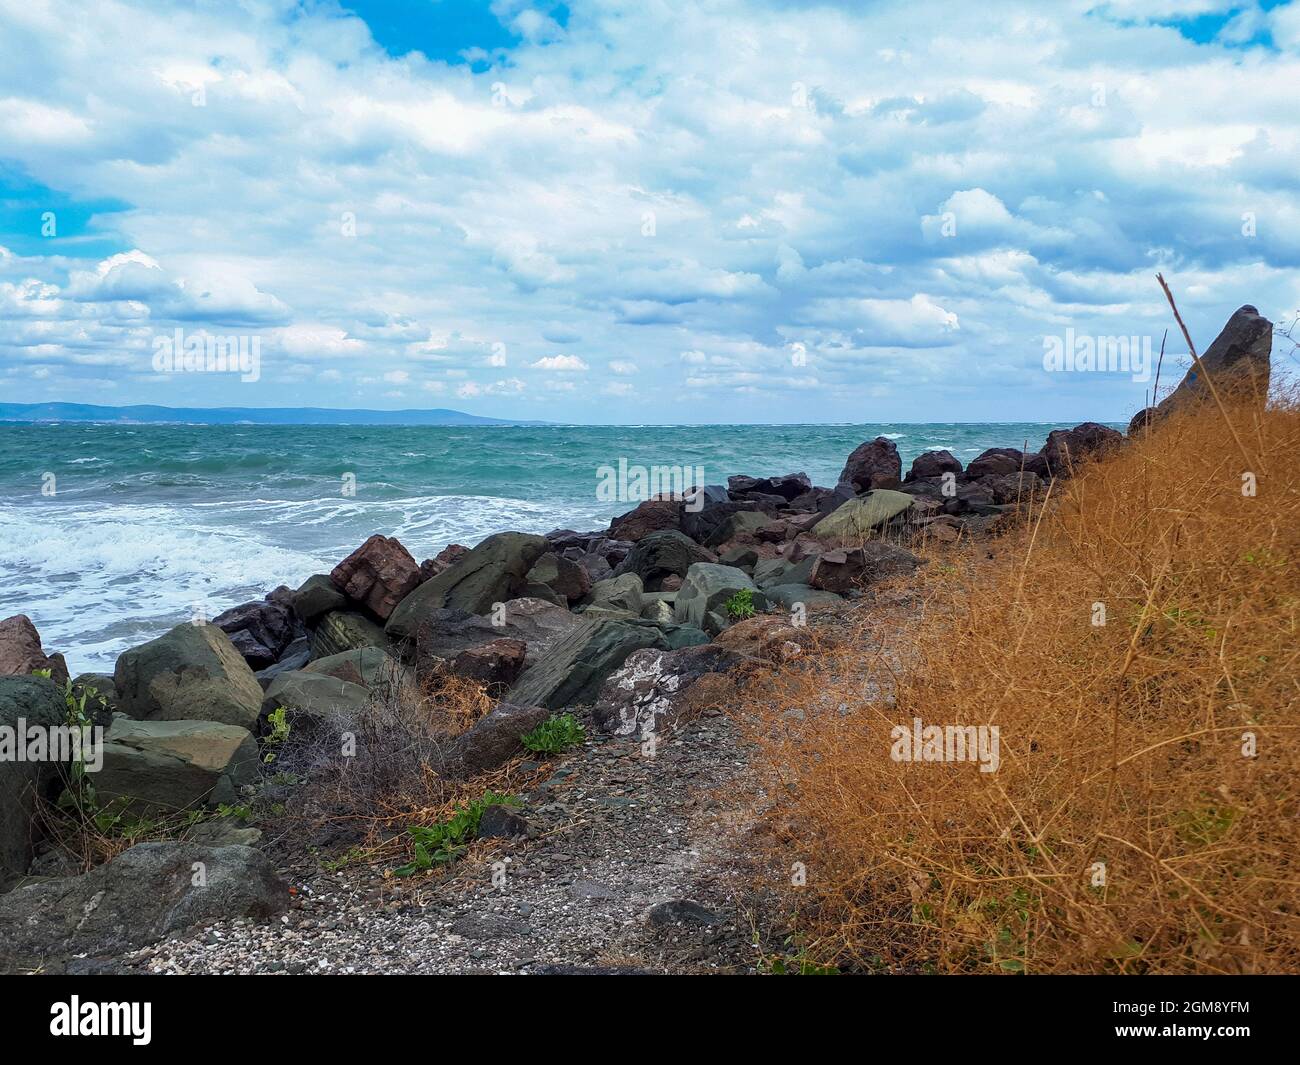 Côte rocheuse avec des plantes à la mer Noire contre ciel nuageux à Pomorie, Burgas Bay, Bulgarie. Banque D'Images